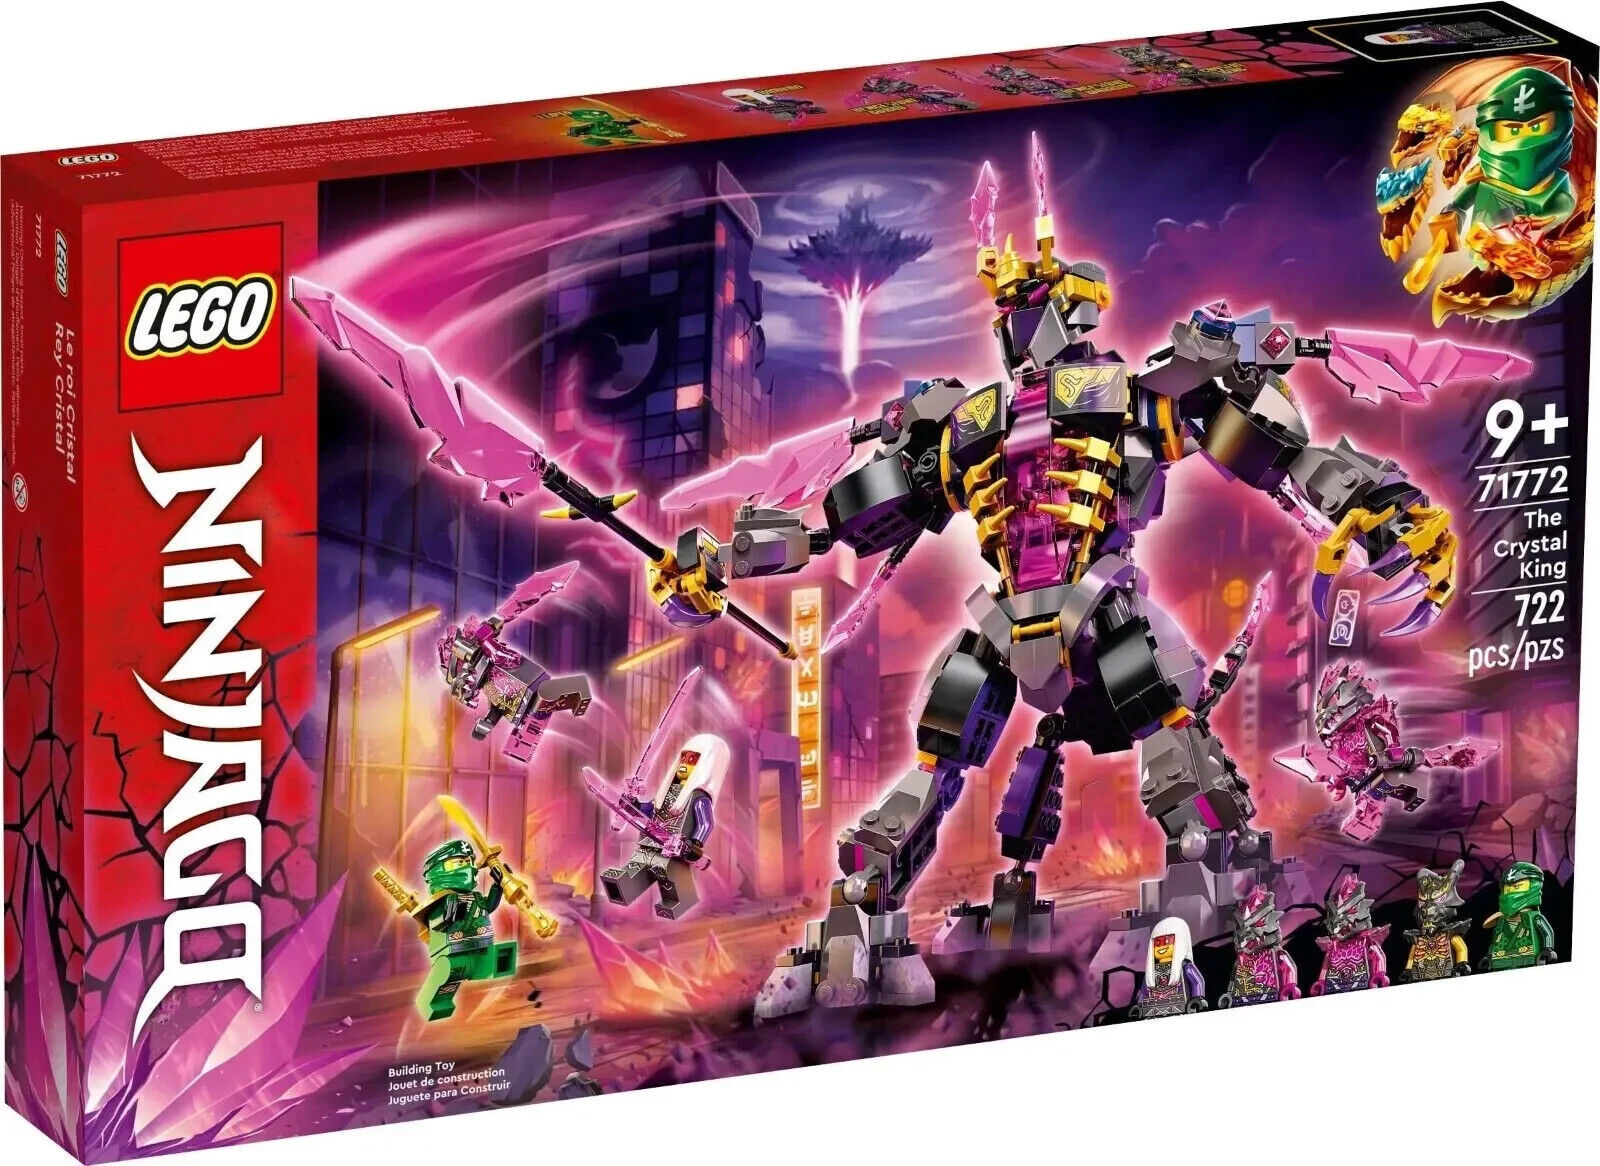 Lego Ninjago The Crystal King (71772) 722 Pcs NEW (See Details) Free Shipping - $108.89